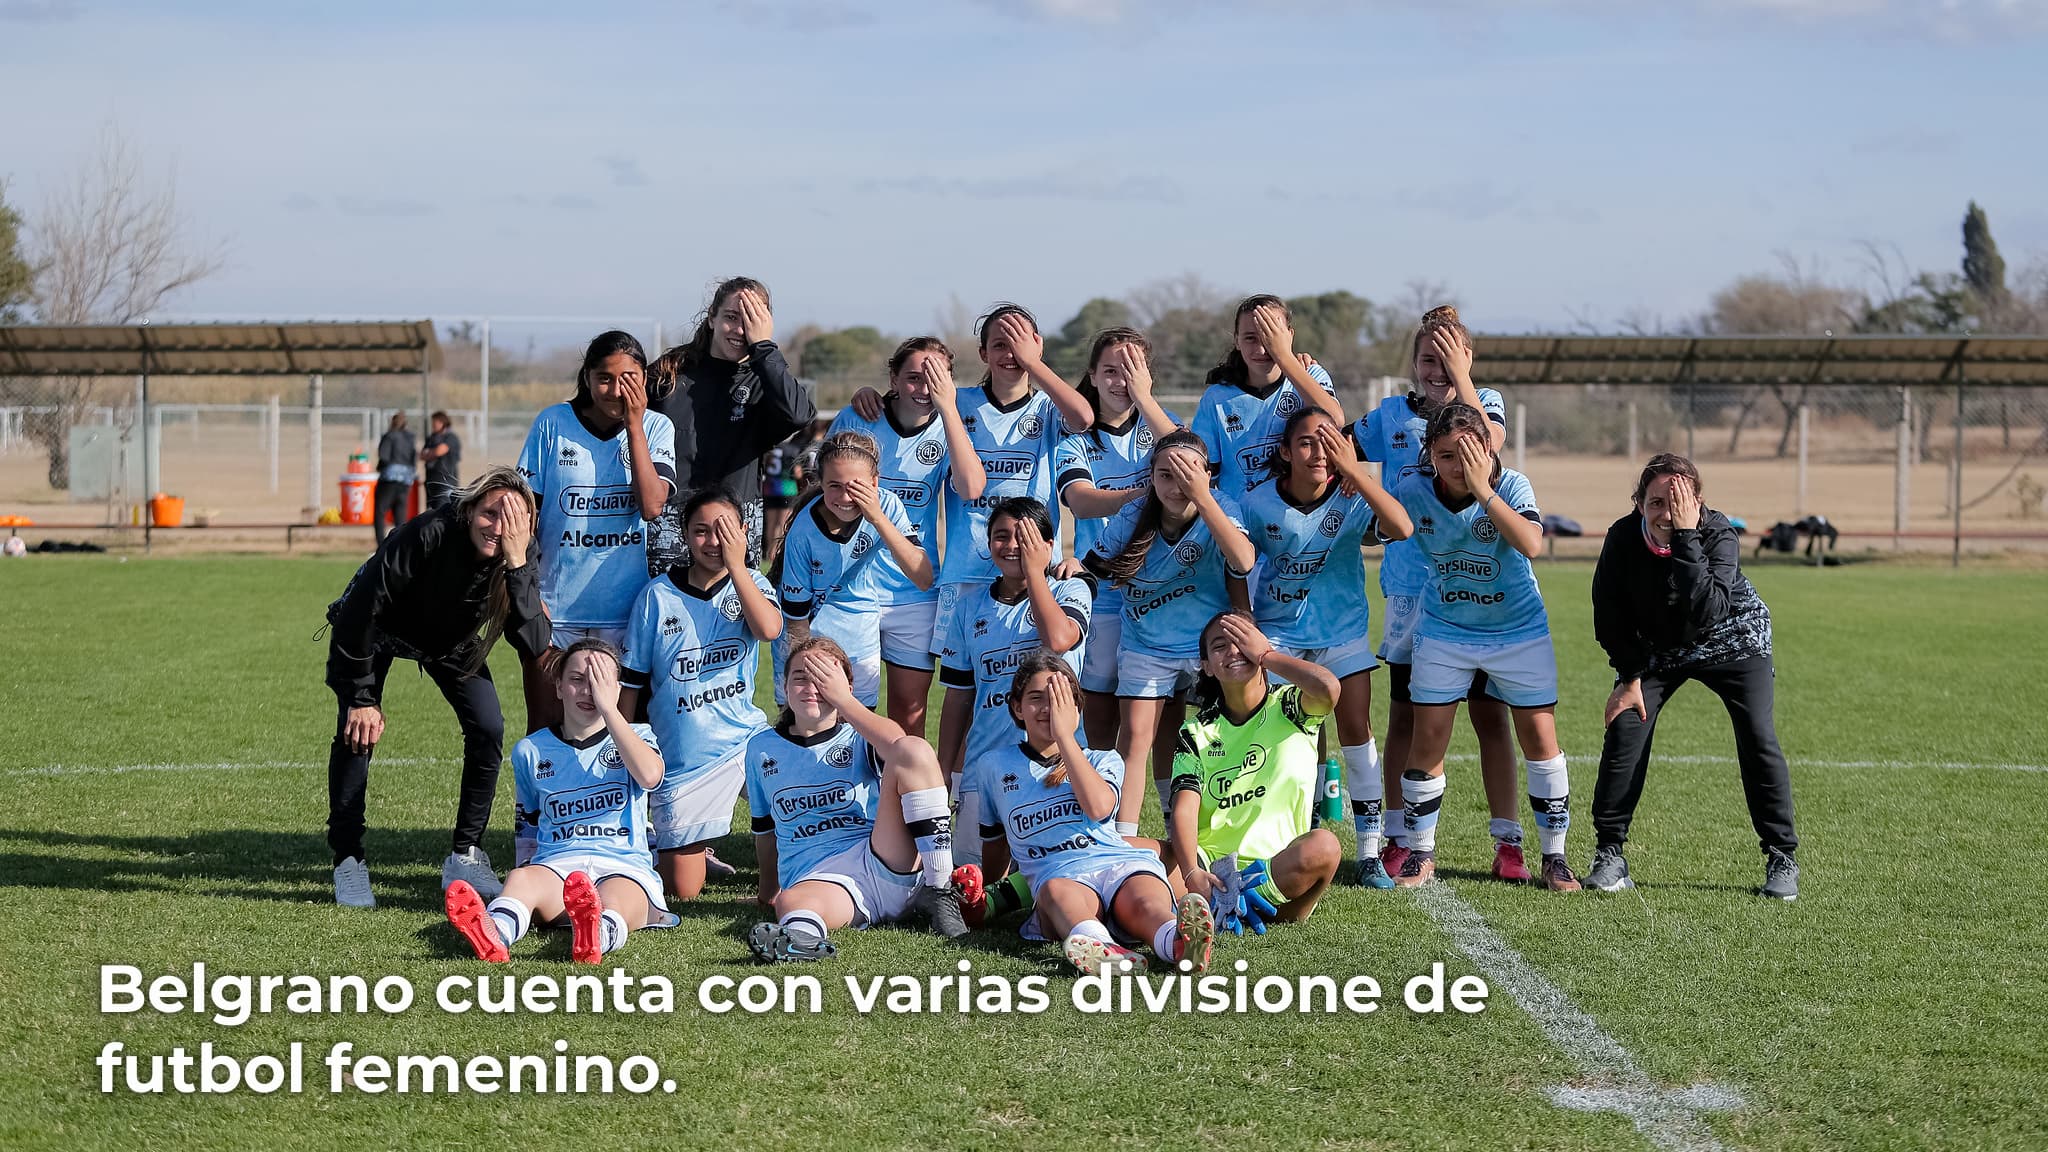 Belgrano cuenta con varias divisione de futbol femenino